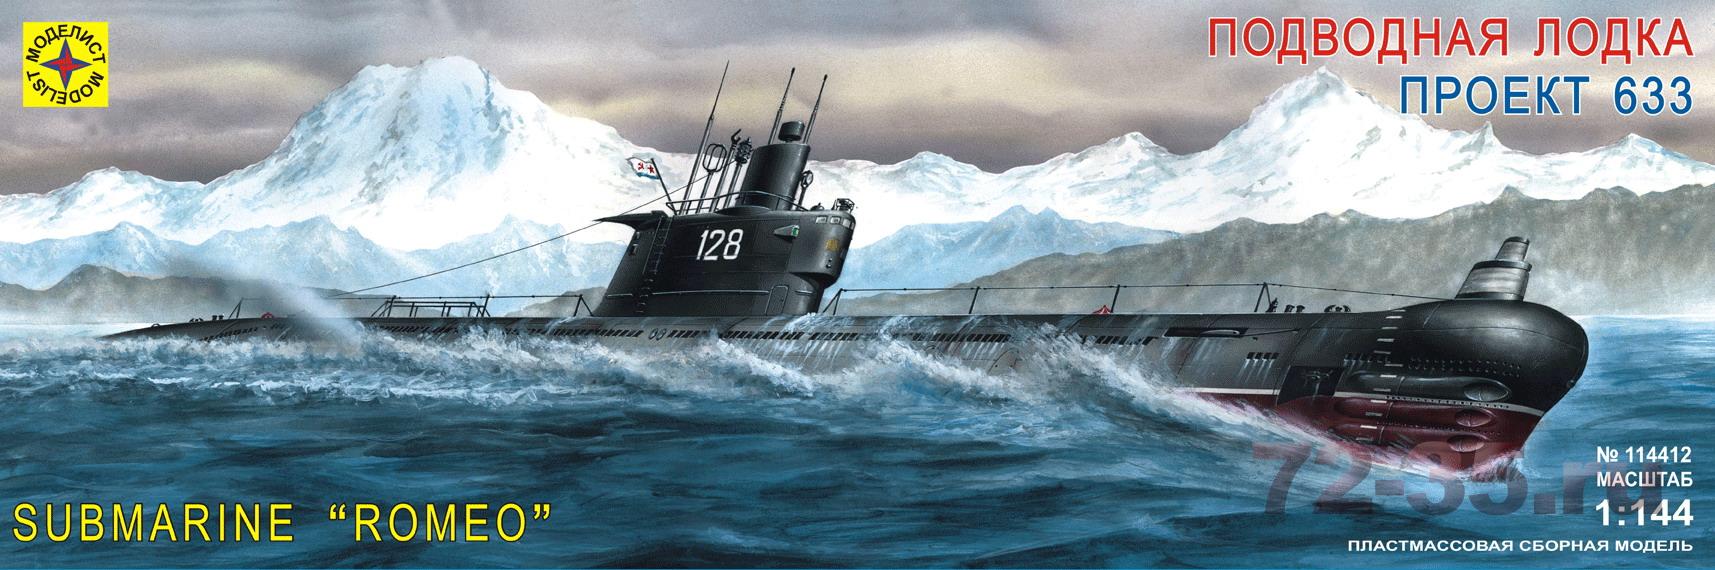 Подводная лодка проект 633 mt70_enl.jpg